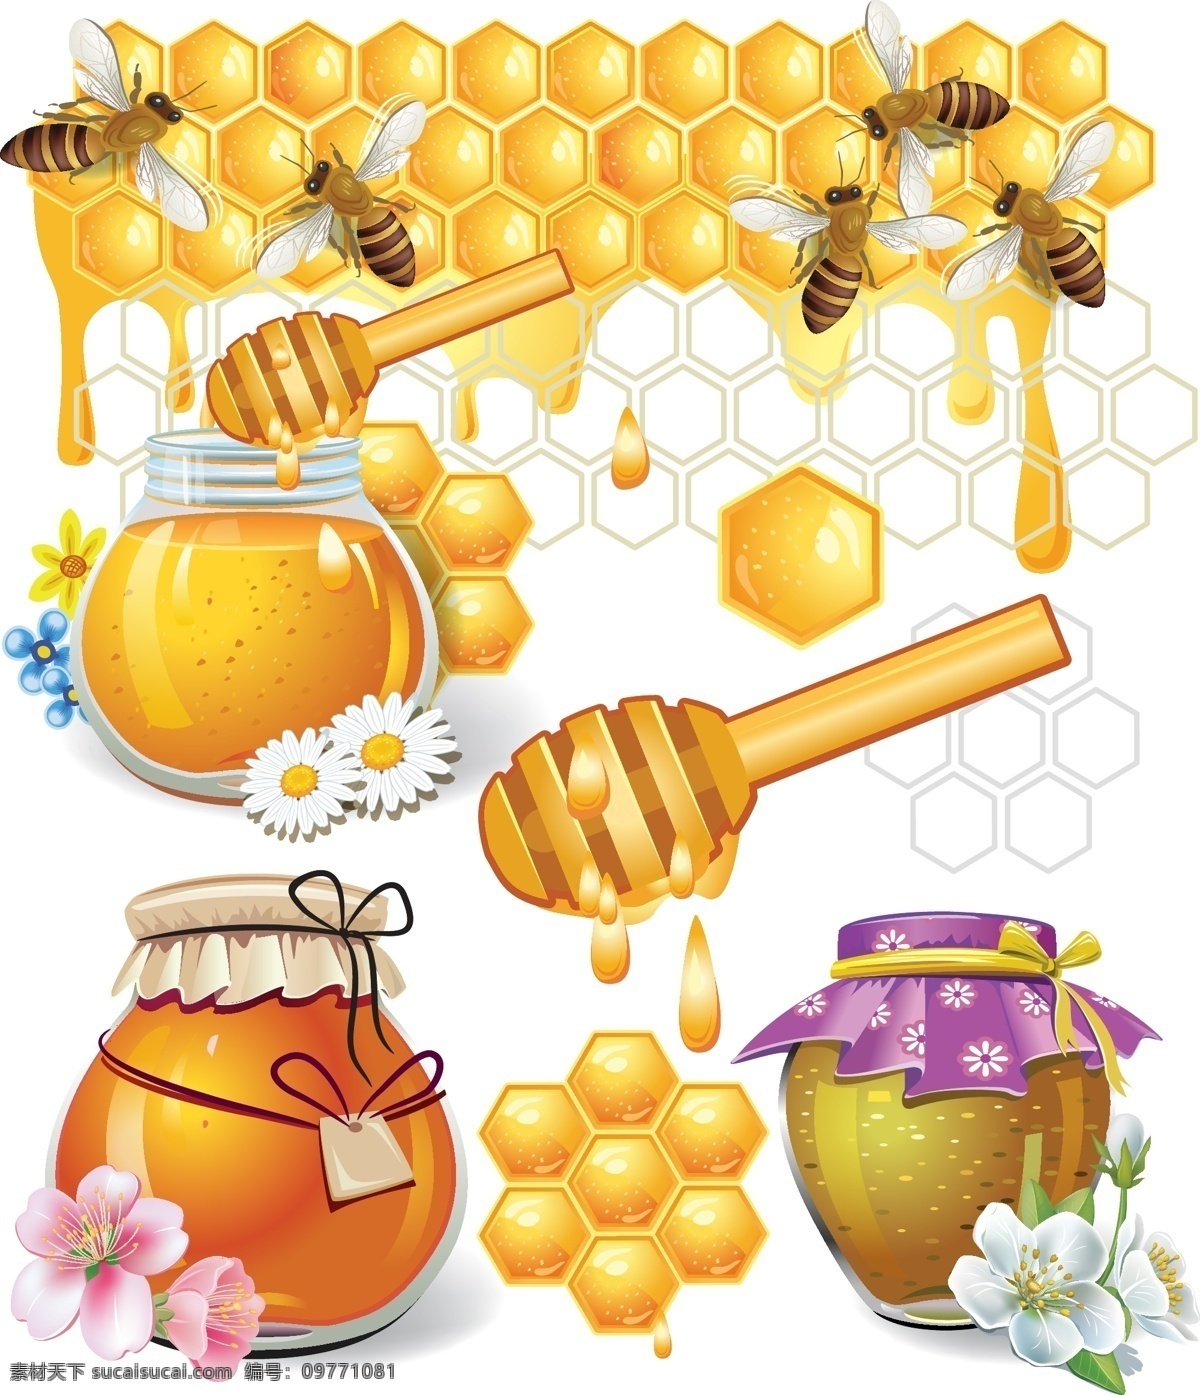 可爱 蜂蜜 蜂巢 矢量 可爱蜂蜜蜂巢 蜜蜂 蜜罐 搅拌棒 蜂窝 花朵 甜味 昆虫 黄色 honey 矢量素材 卡通设计